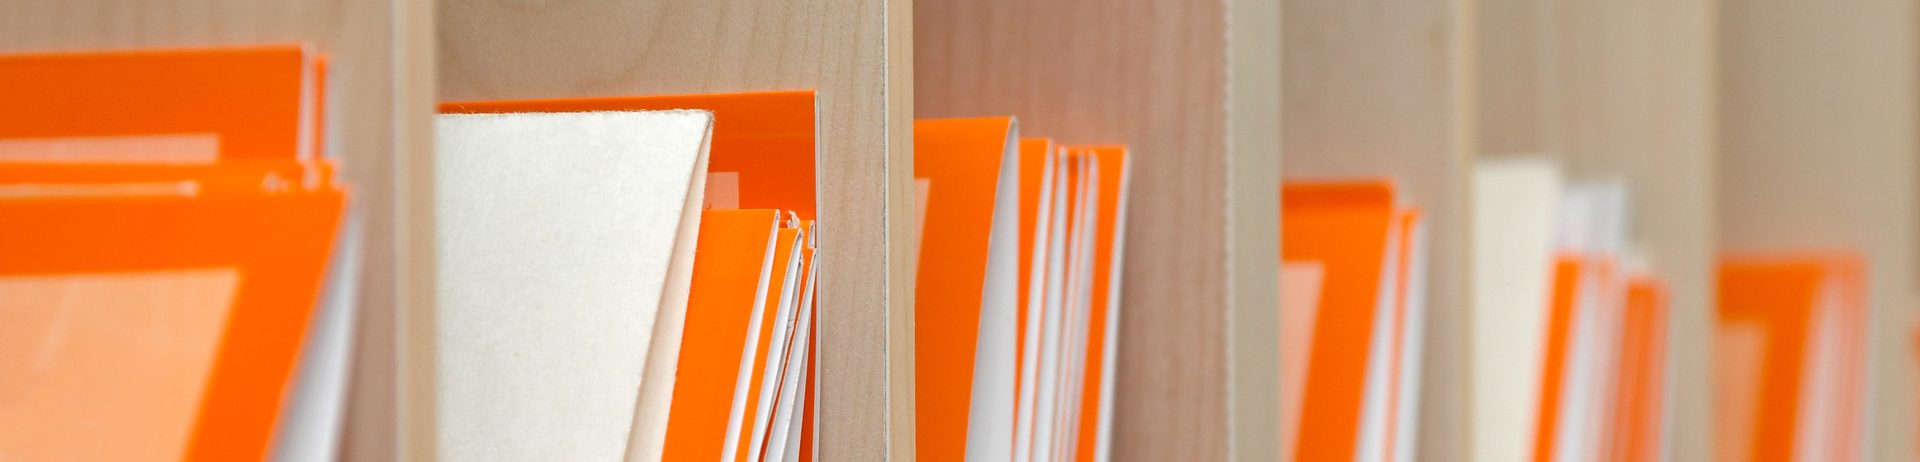 Orange office folders